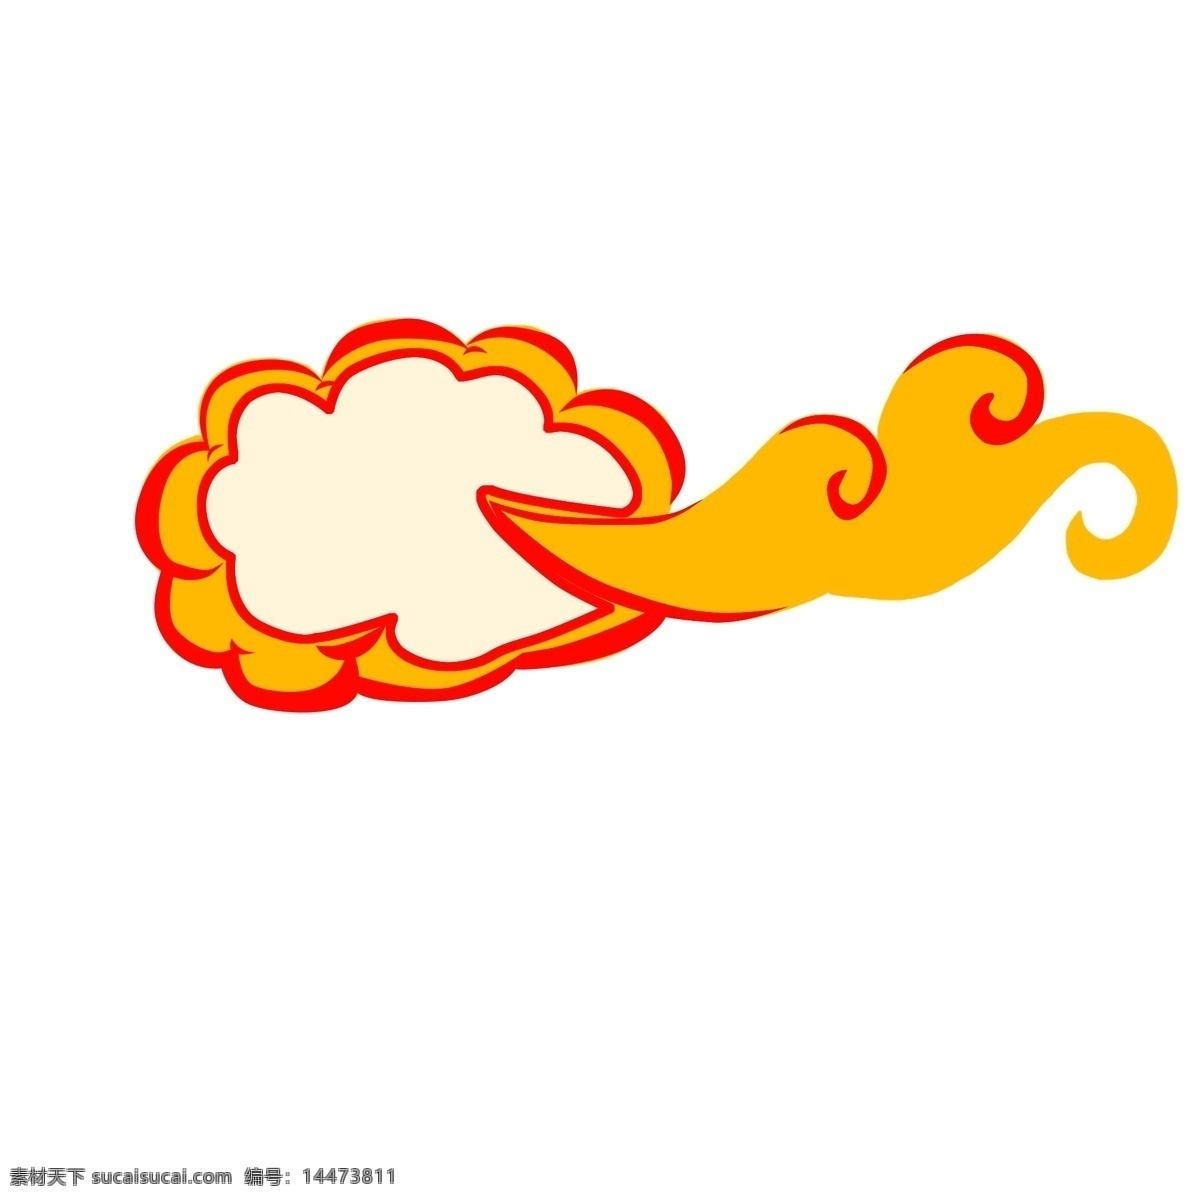 白云 装饰 图案 橙 云 标签 云朵 边框 图案装饰 卡通手绘风 多边形 可爱风 小物件 小标签 商标 装饰物 橙云标签